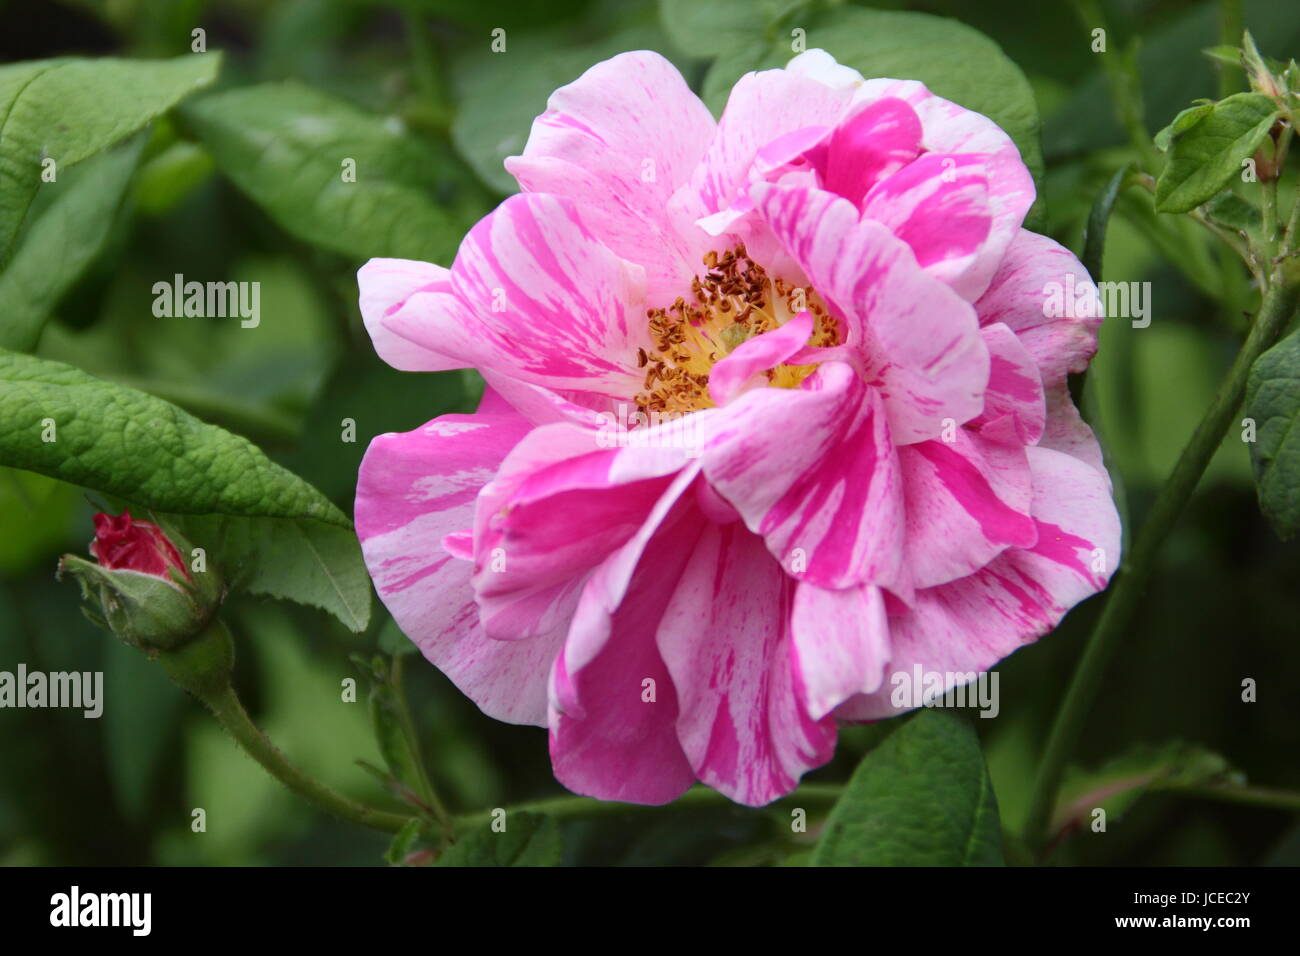 Rosa Mundi, parfumé, un ancien à rayures rose gallica également connu sous le nom de Rosa Gallica 'Versicolor', en pleine floraison dans un jardin anglais en juin, UK Banque D'Images